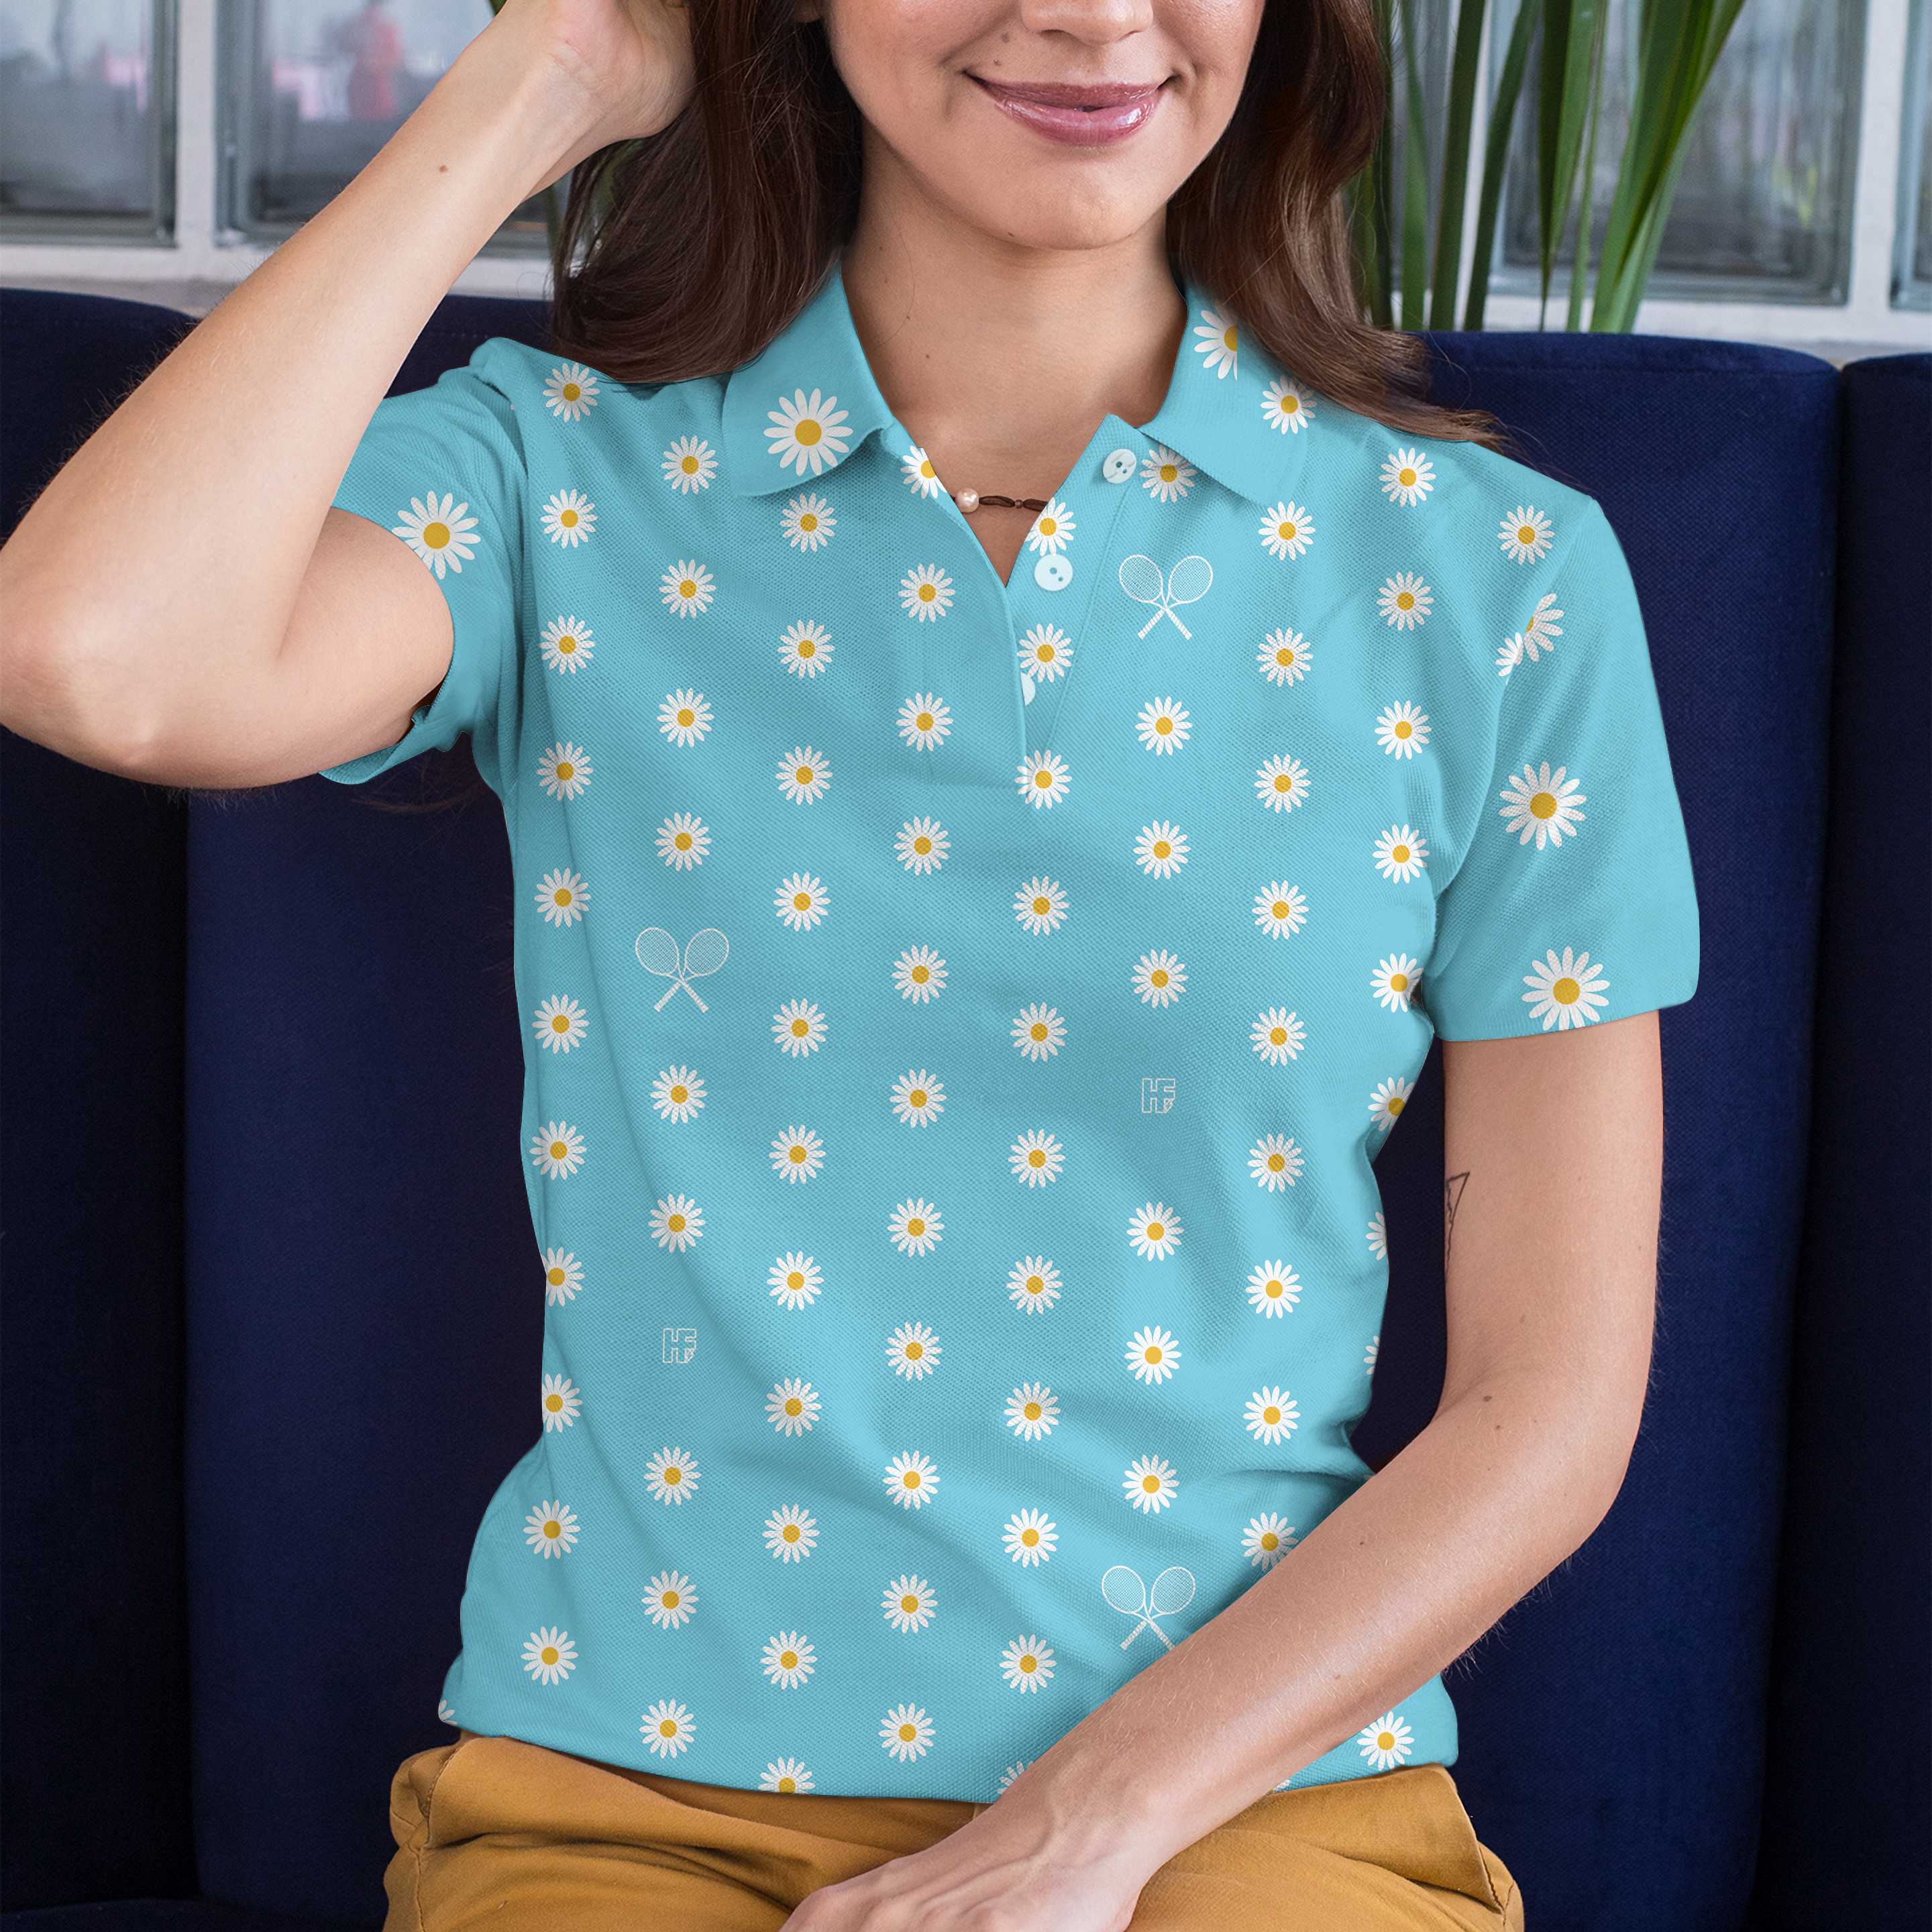 Daisy Tennis Shirt Short Sleeve Women Polo Shirt Coolspod